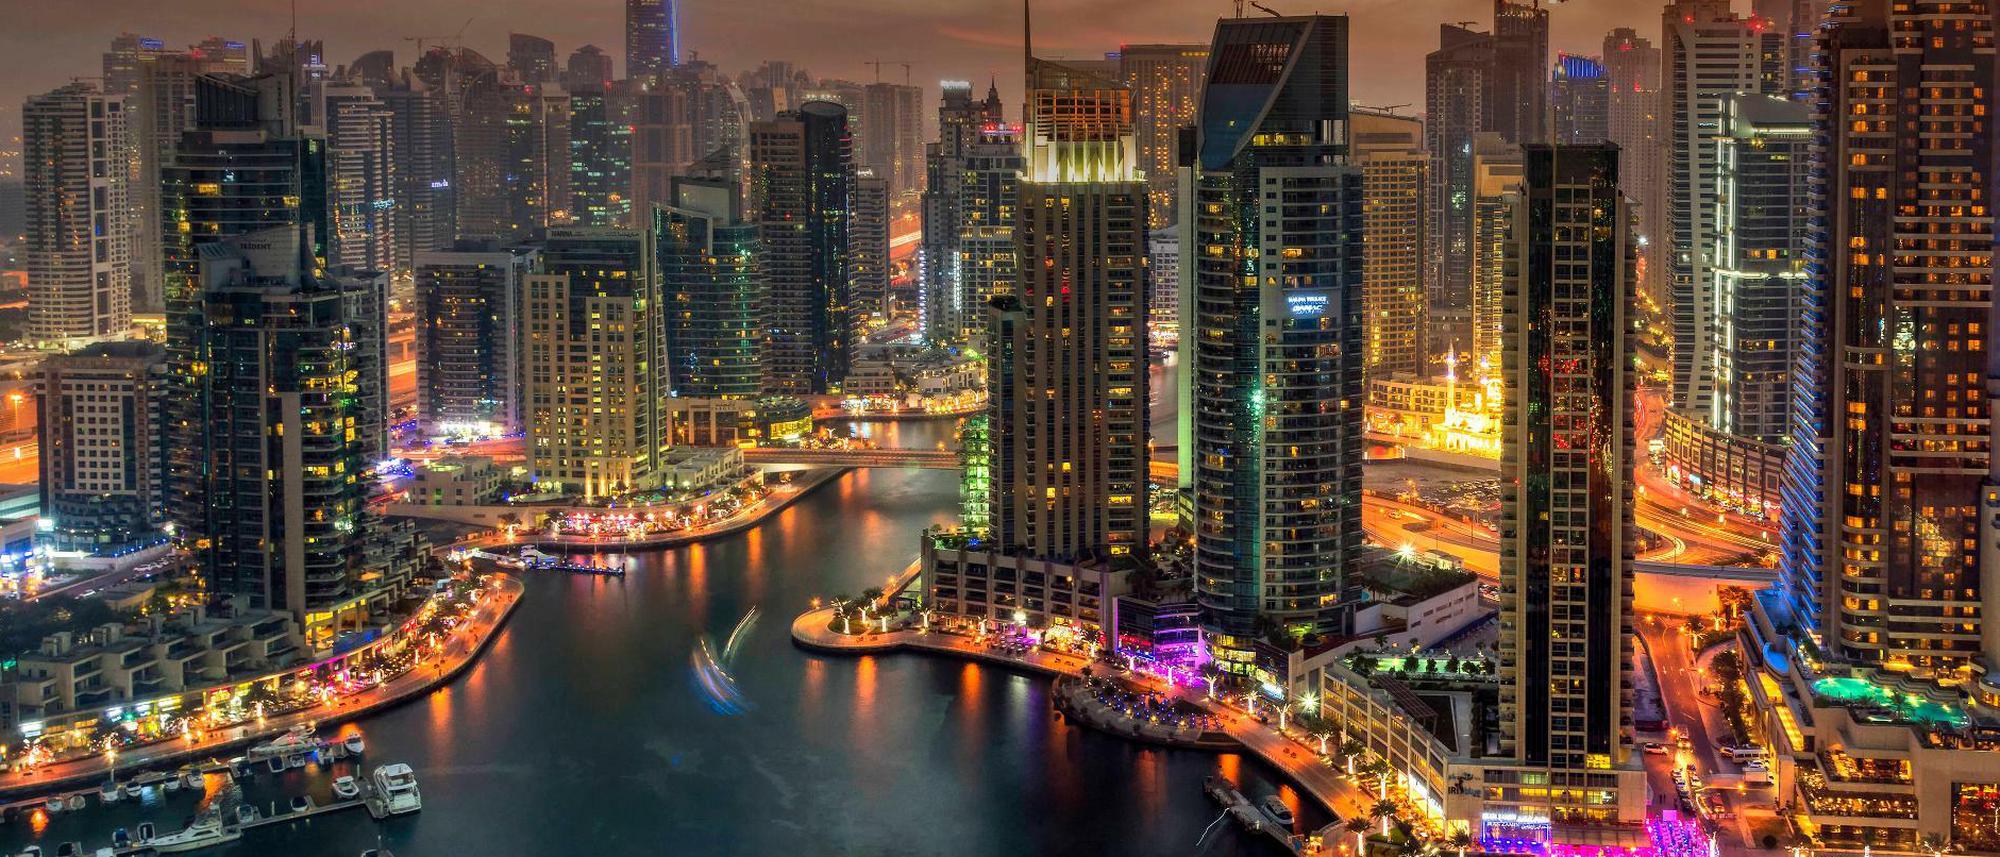  Dubai Hintergrundbild 2000x857. Das Mekka der Oligarchen: Dubai zieht immer mehr reiche Russen an